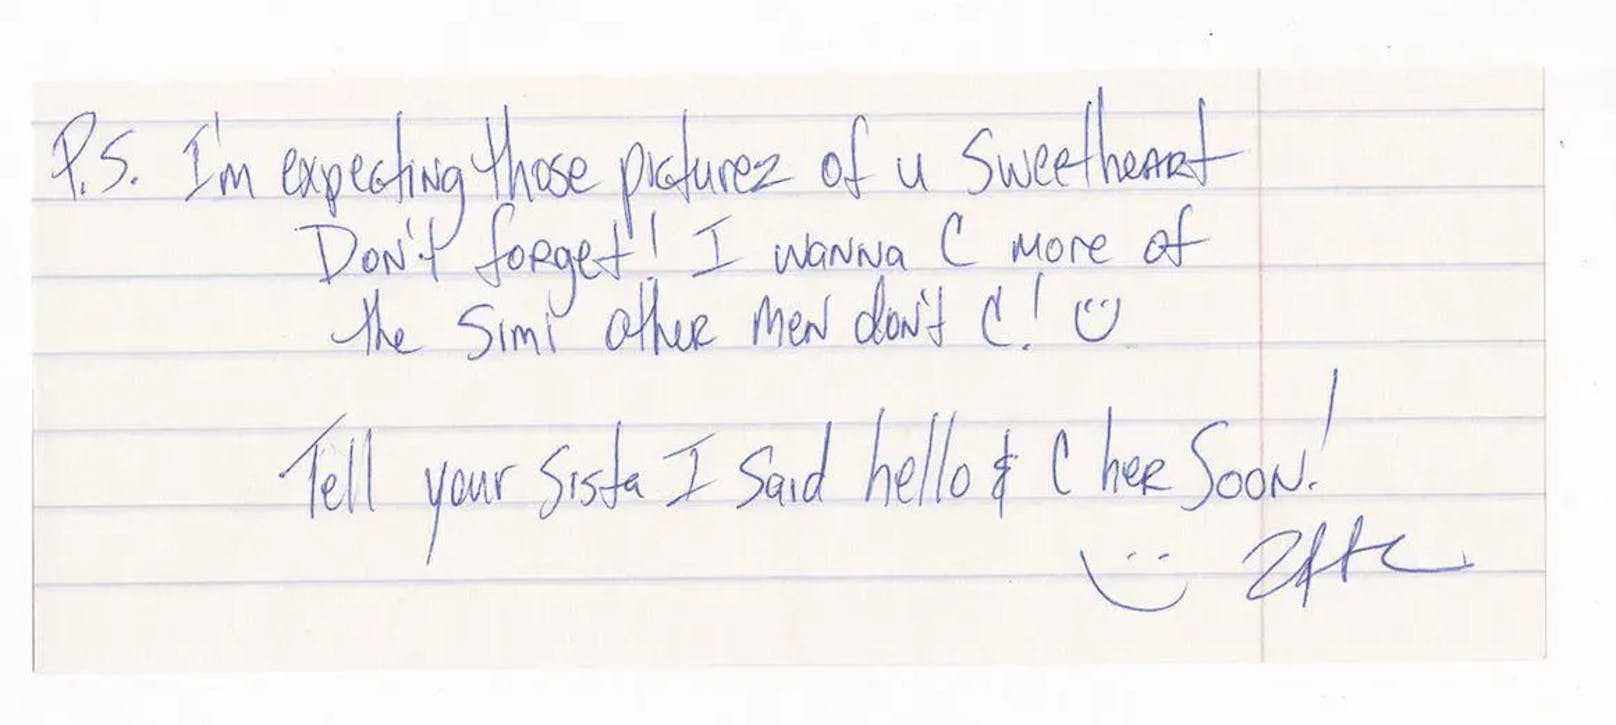 Schlüpfrig: Diesen Brief schrieb Tupac an seine Freundin Simi Chouhan, als er im Gefängnis war. "PS: Ich erwarte diese Bilder von dir, Schatz, vergiss das nicht! Ich will mehr von der Simi sehen, die andere Männer nicht sehen! Grüß deine Schwester von mir und ich sehe euch bald!"